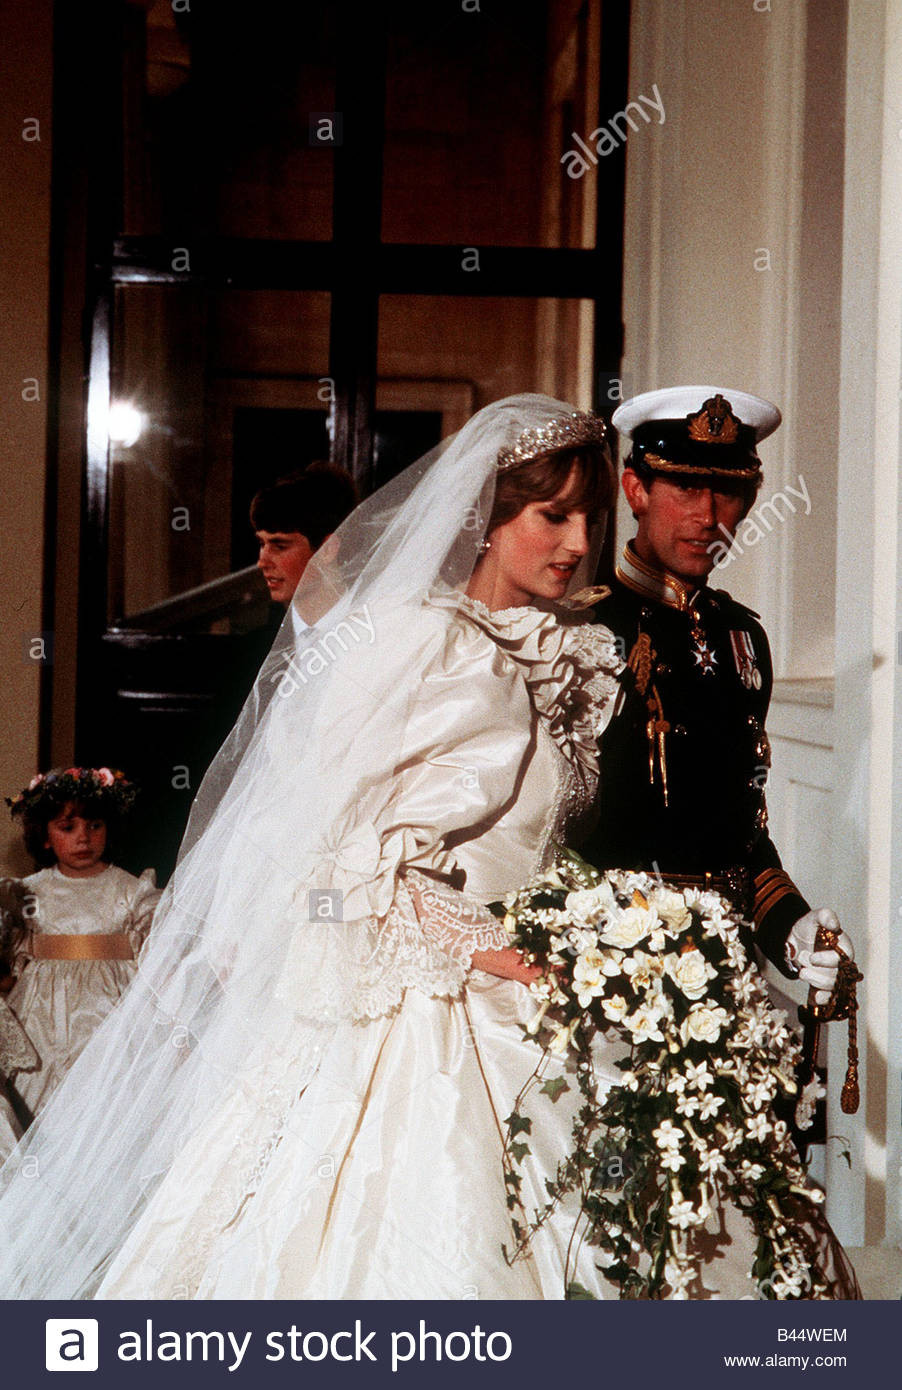 Hochzeit Charles Diana
 Königliche Hochzeit Prinz Charles und Prinzessin Diana